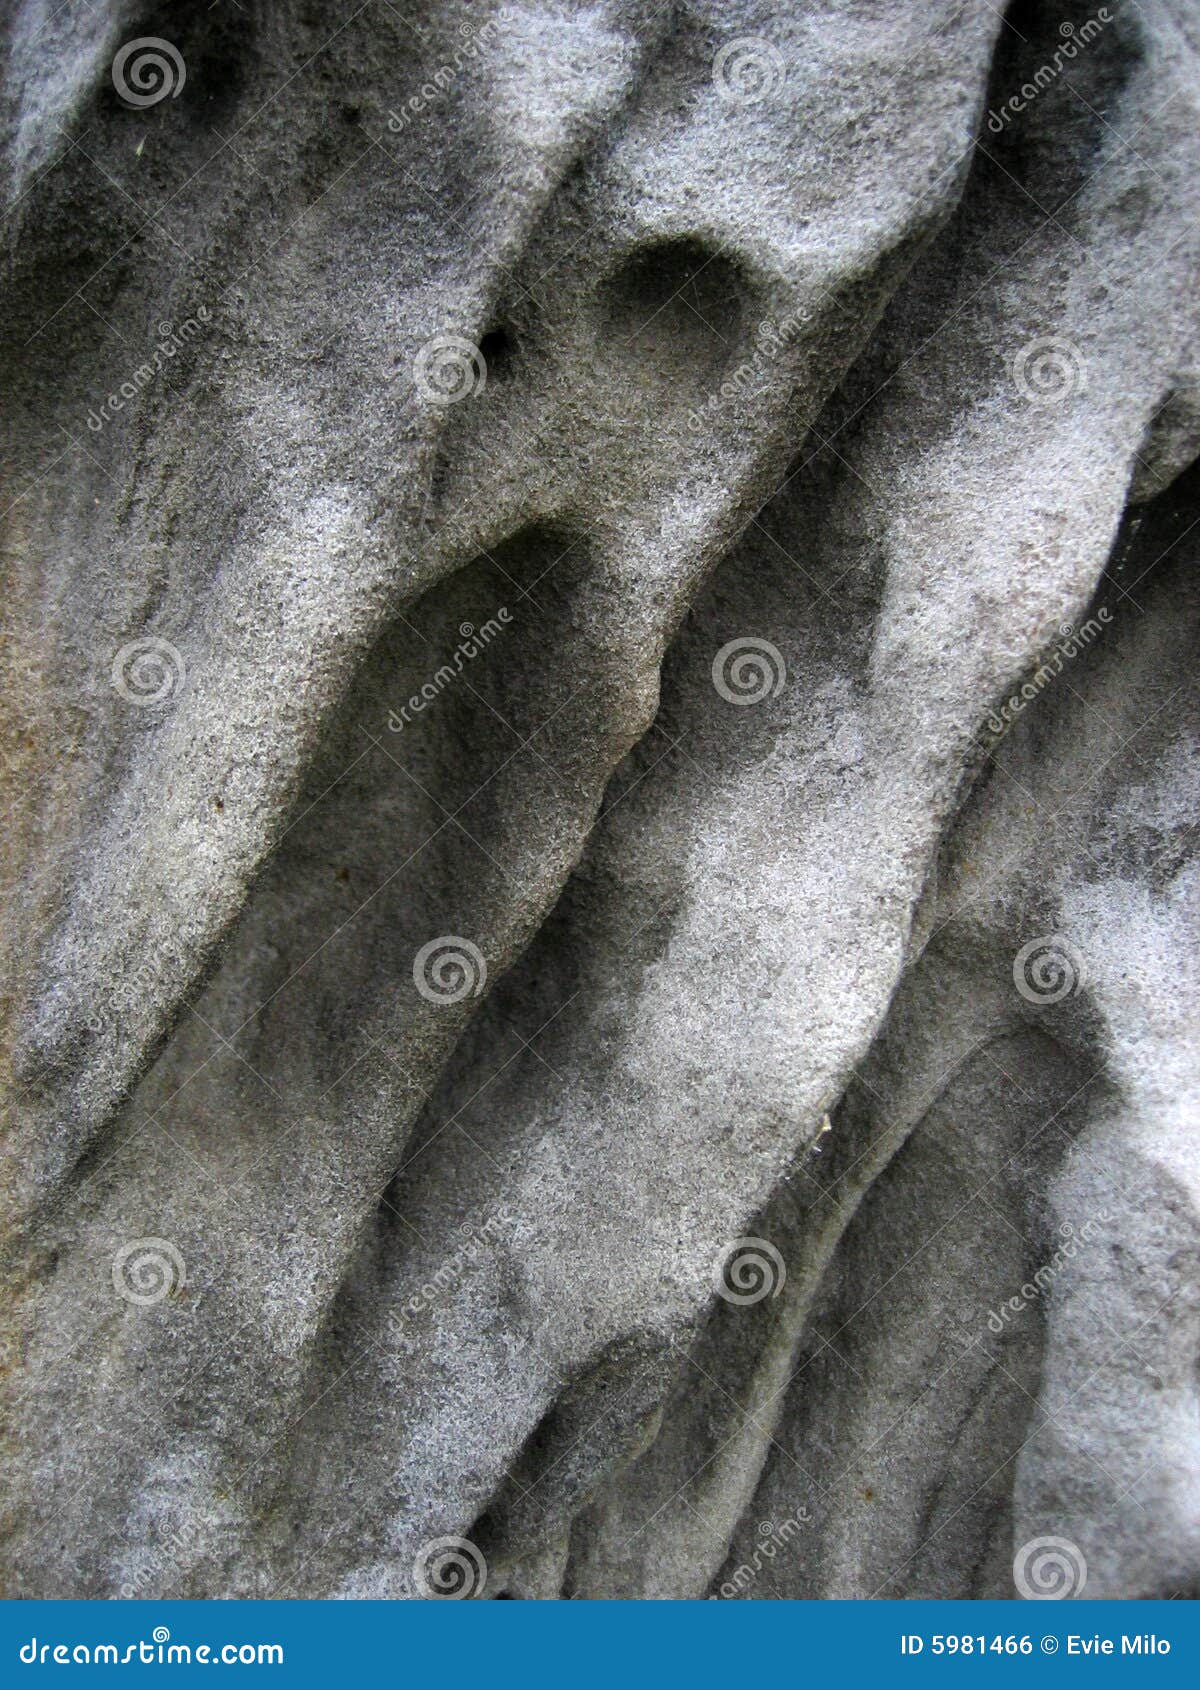 eroded stone